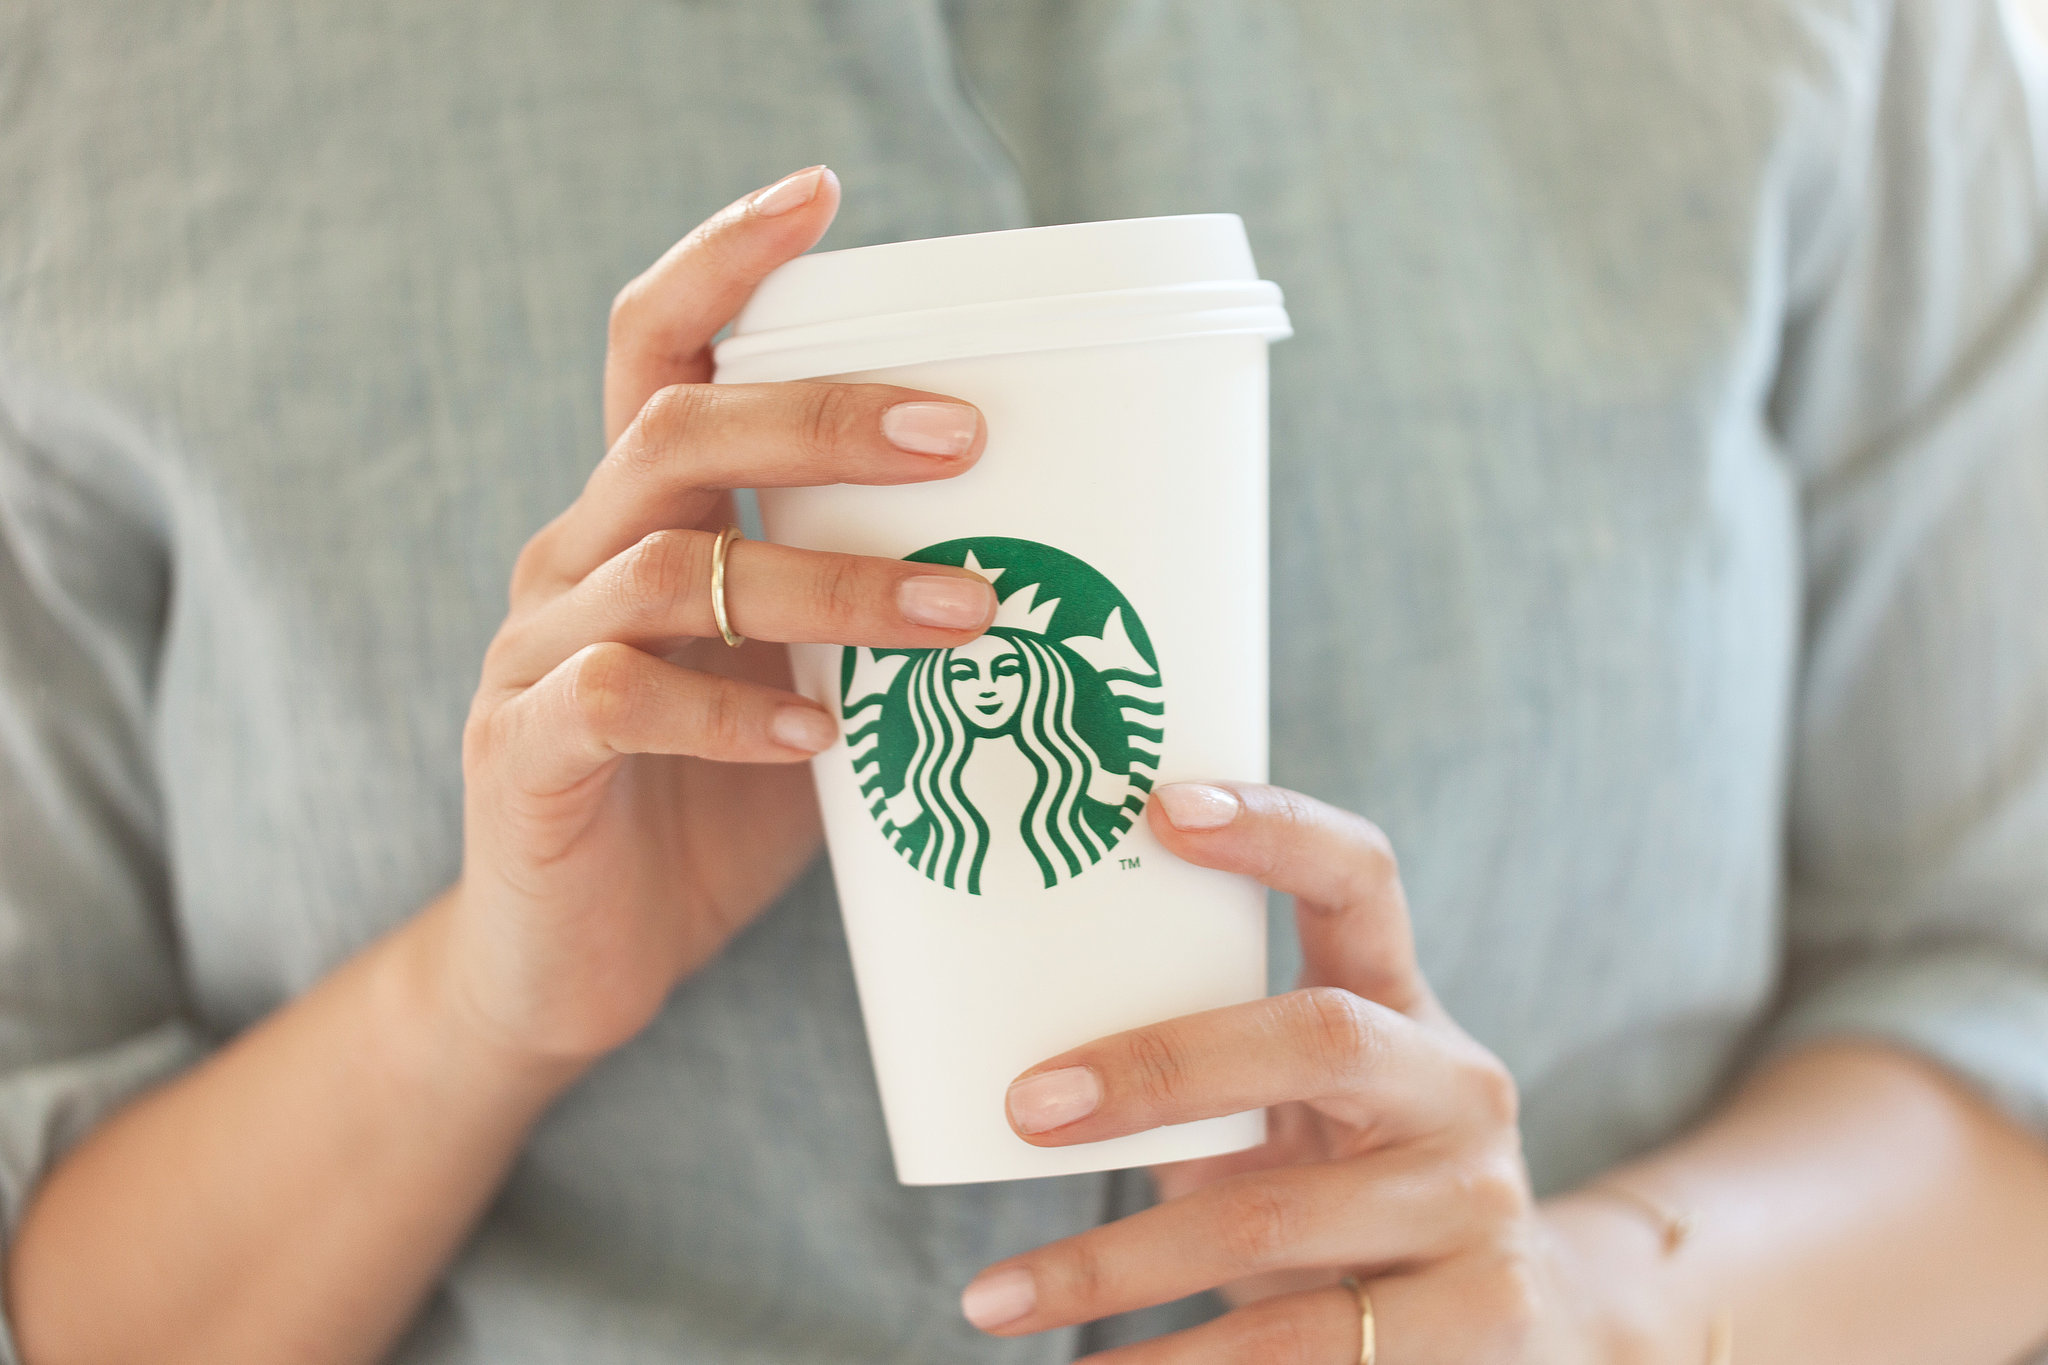  Demandan a Starbucks por ‘llenar a medias’ los cafés